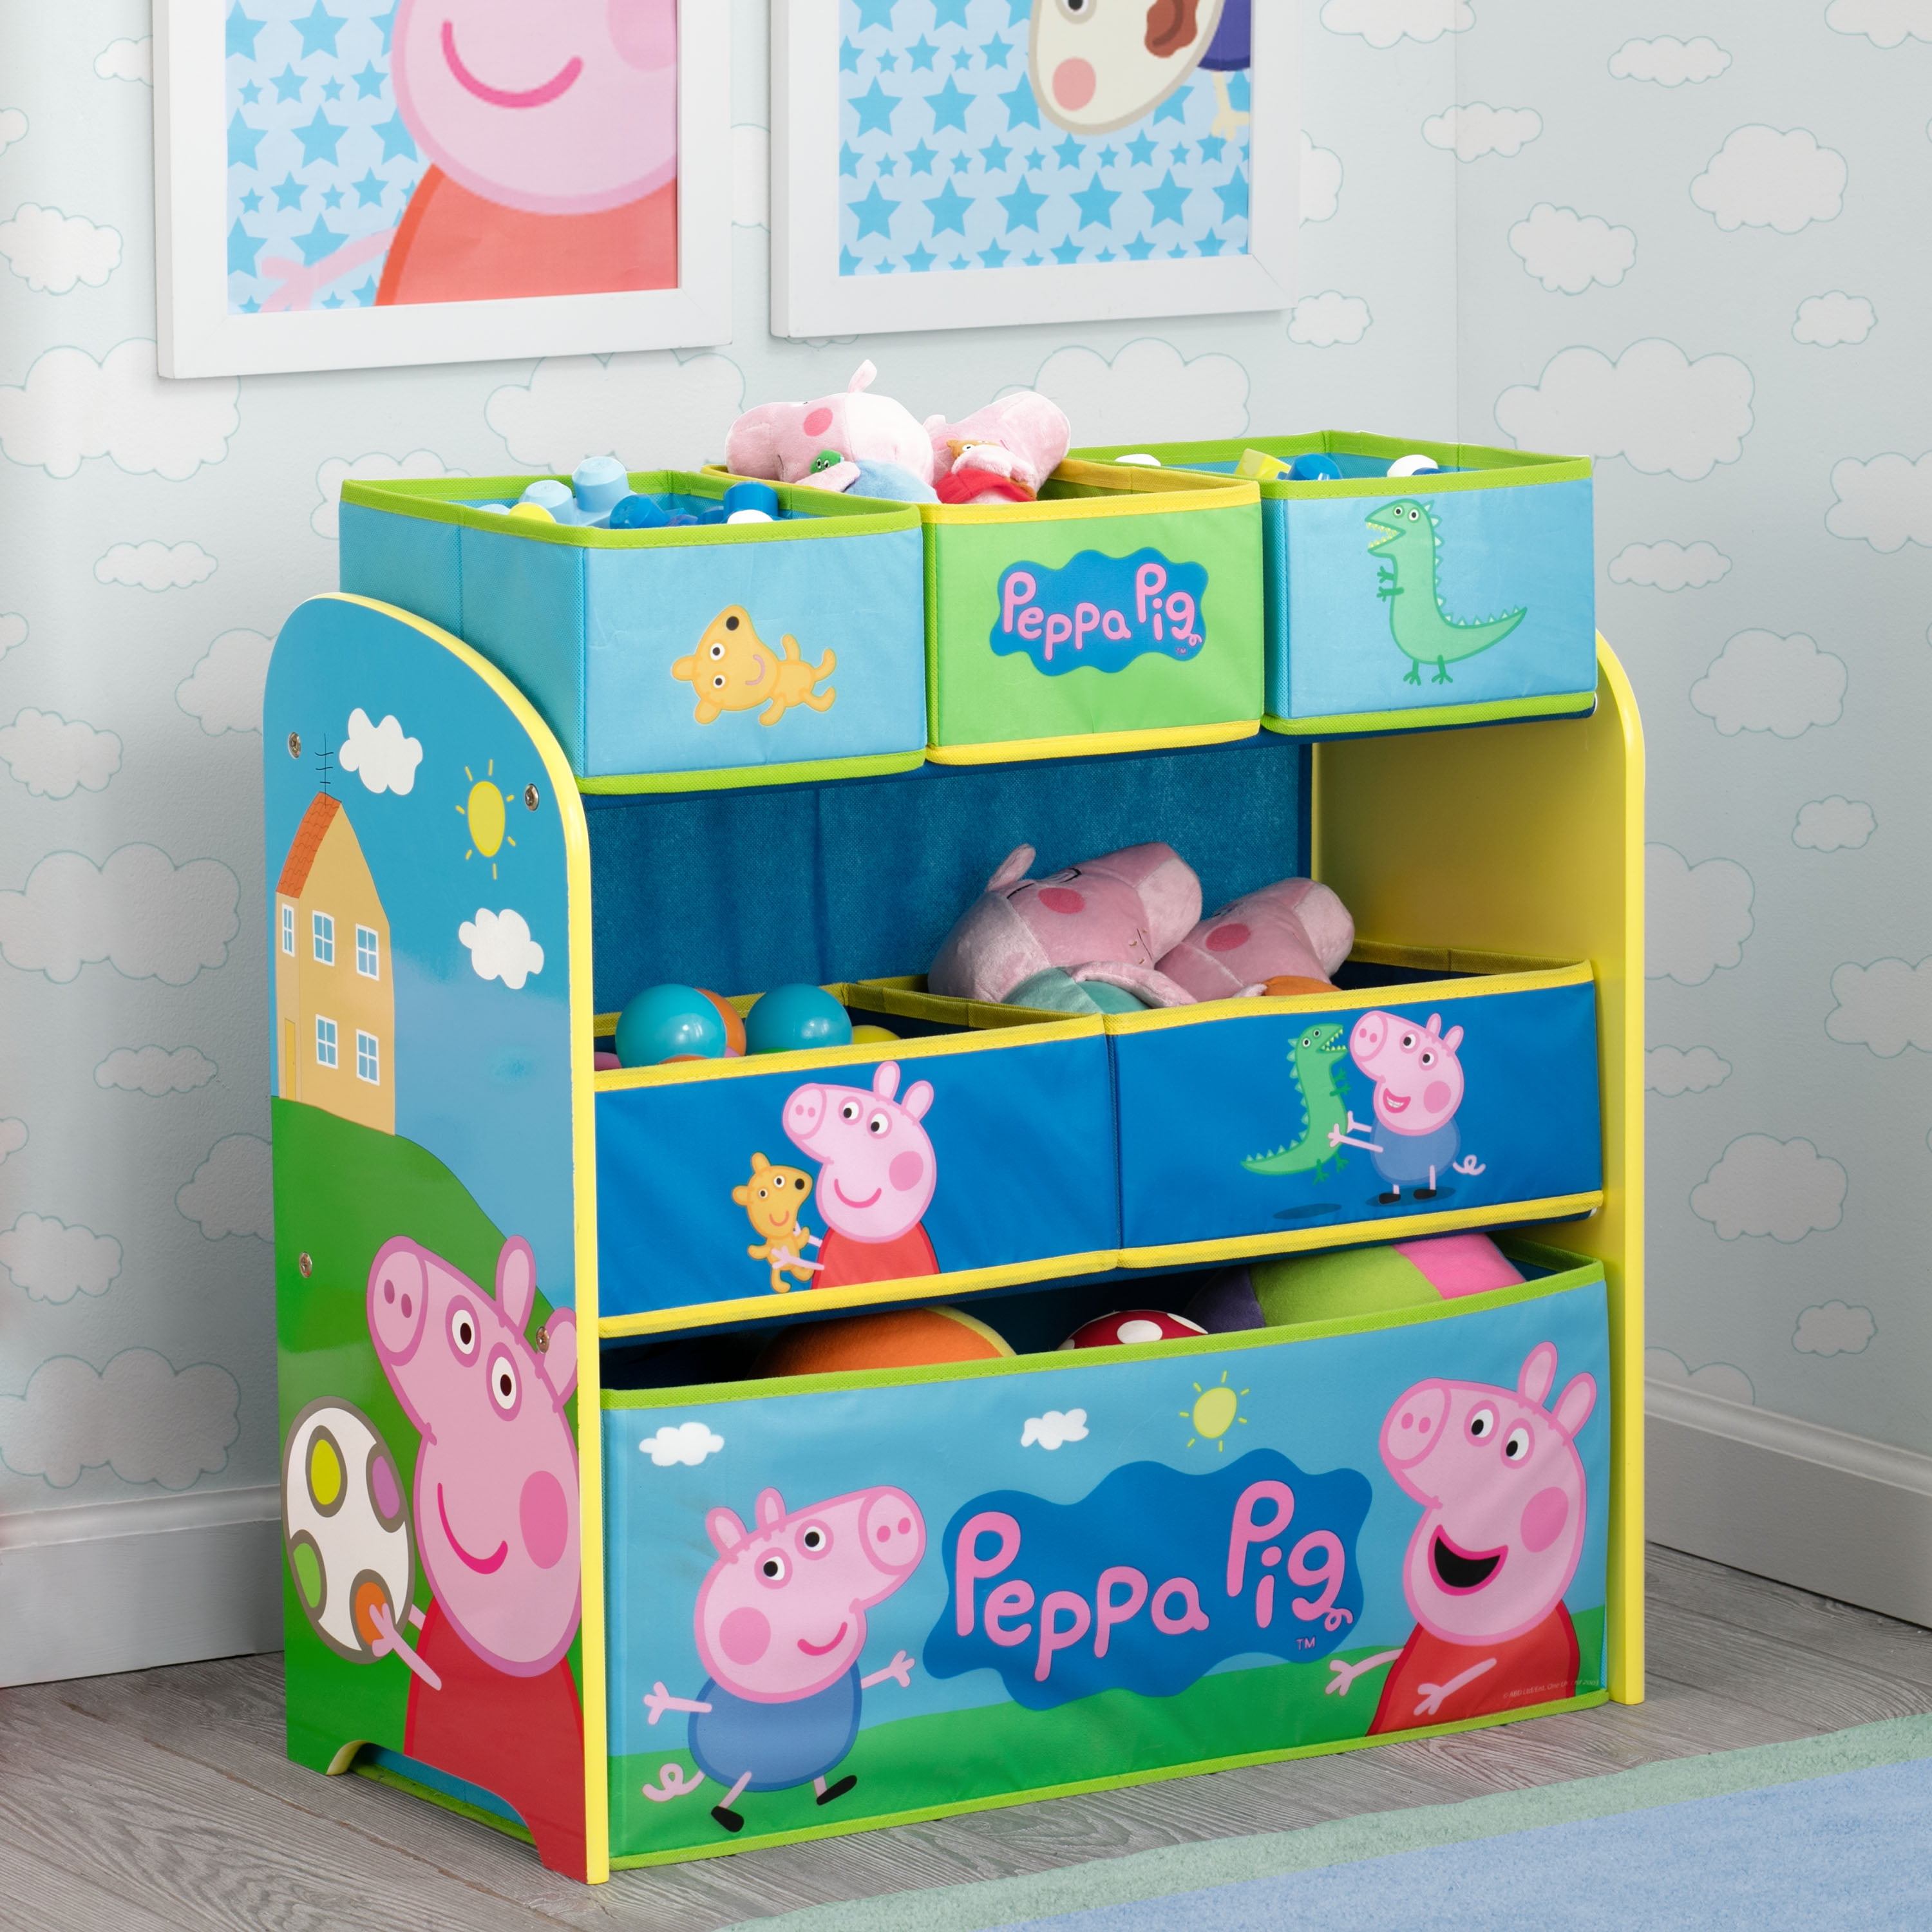 Peppa Pig Multi-Bin Toy Organizer by 